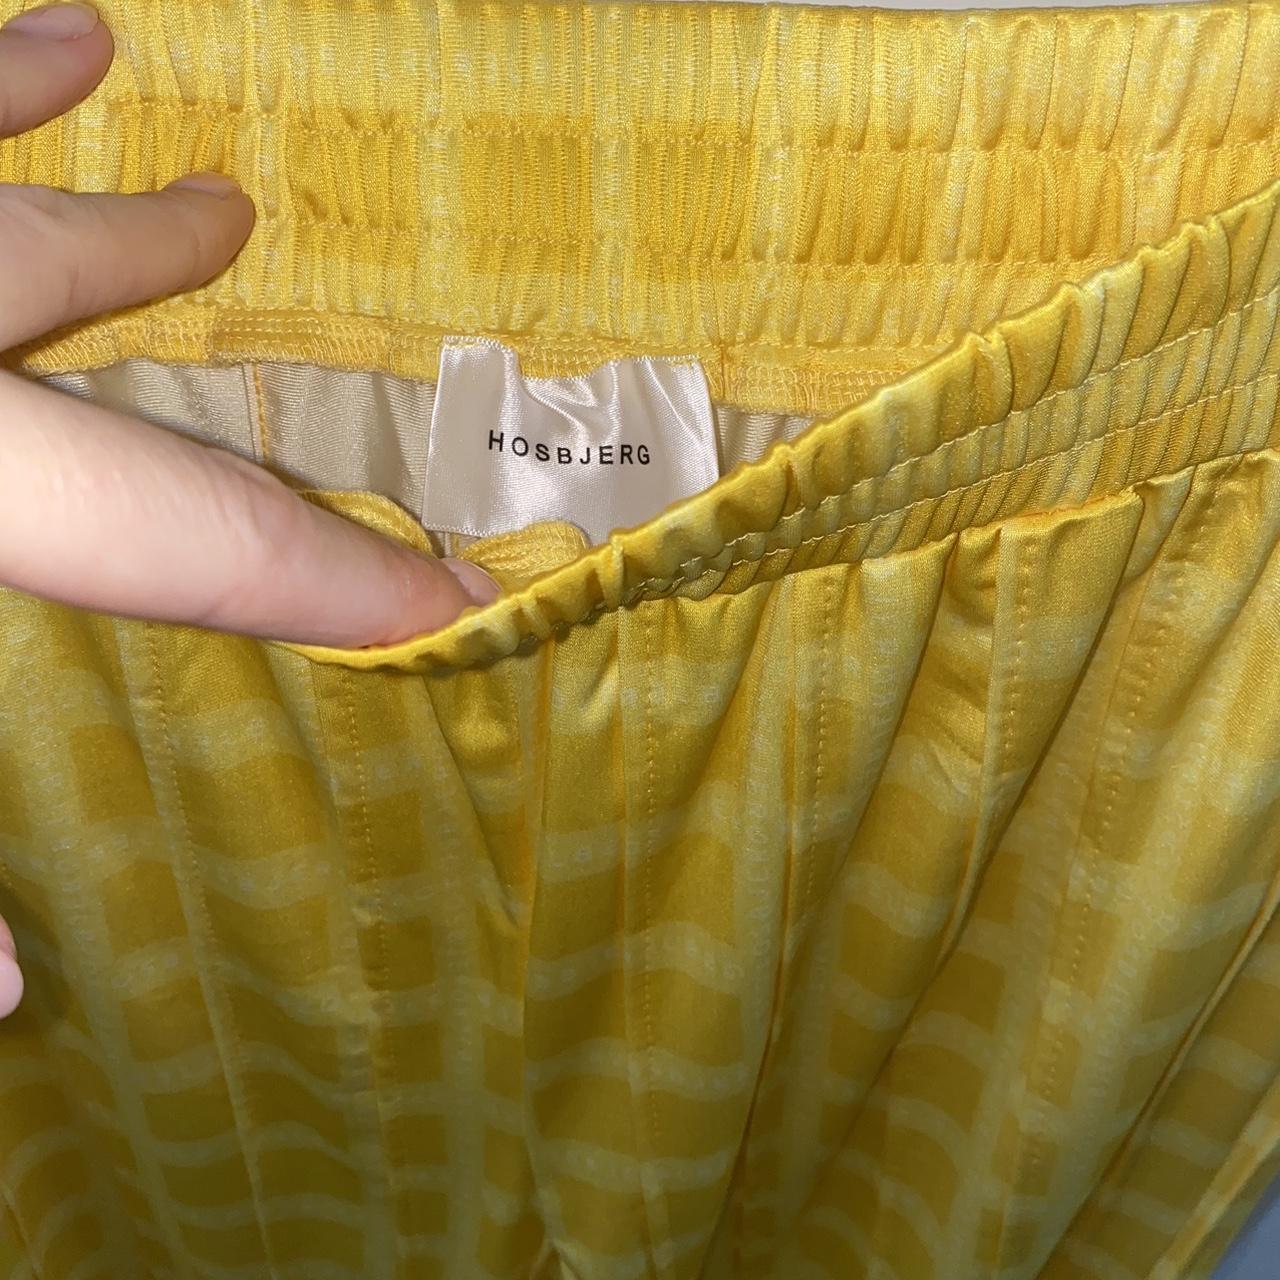 Hosbjerg Women's Yellow Trousers (3)